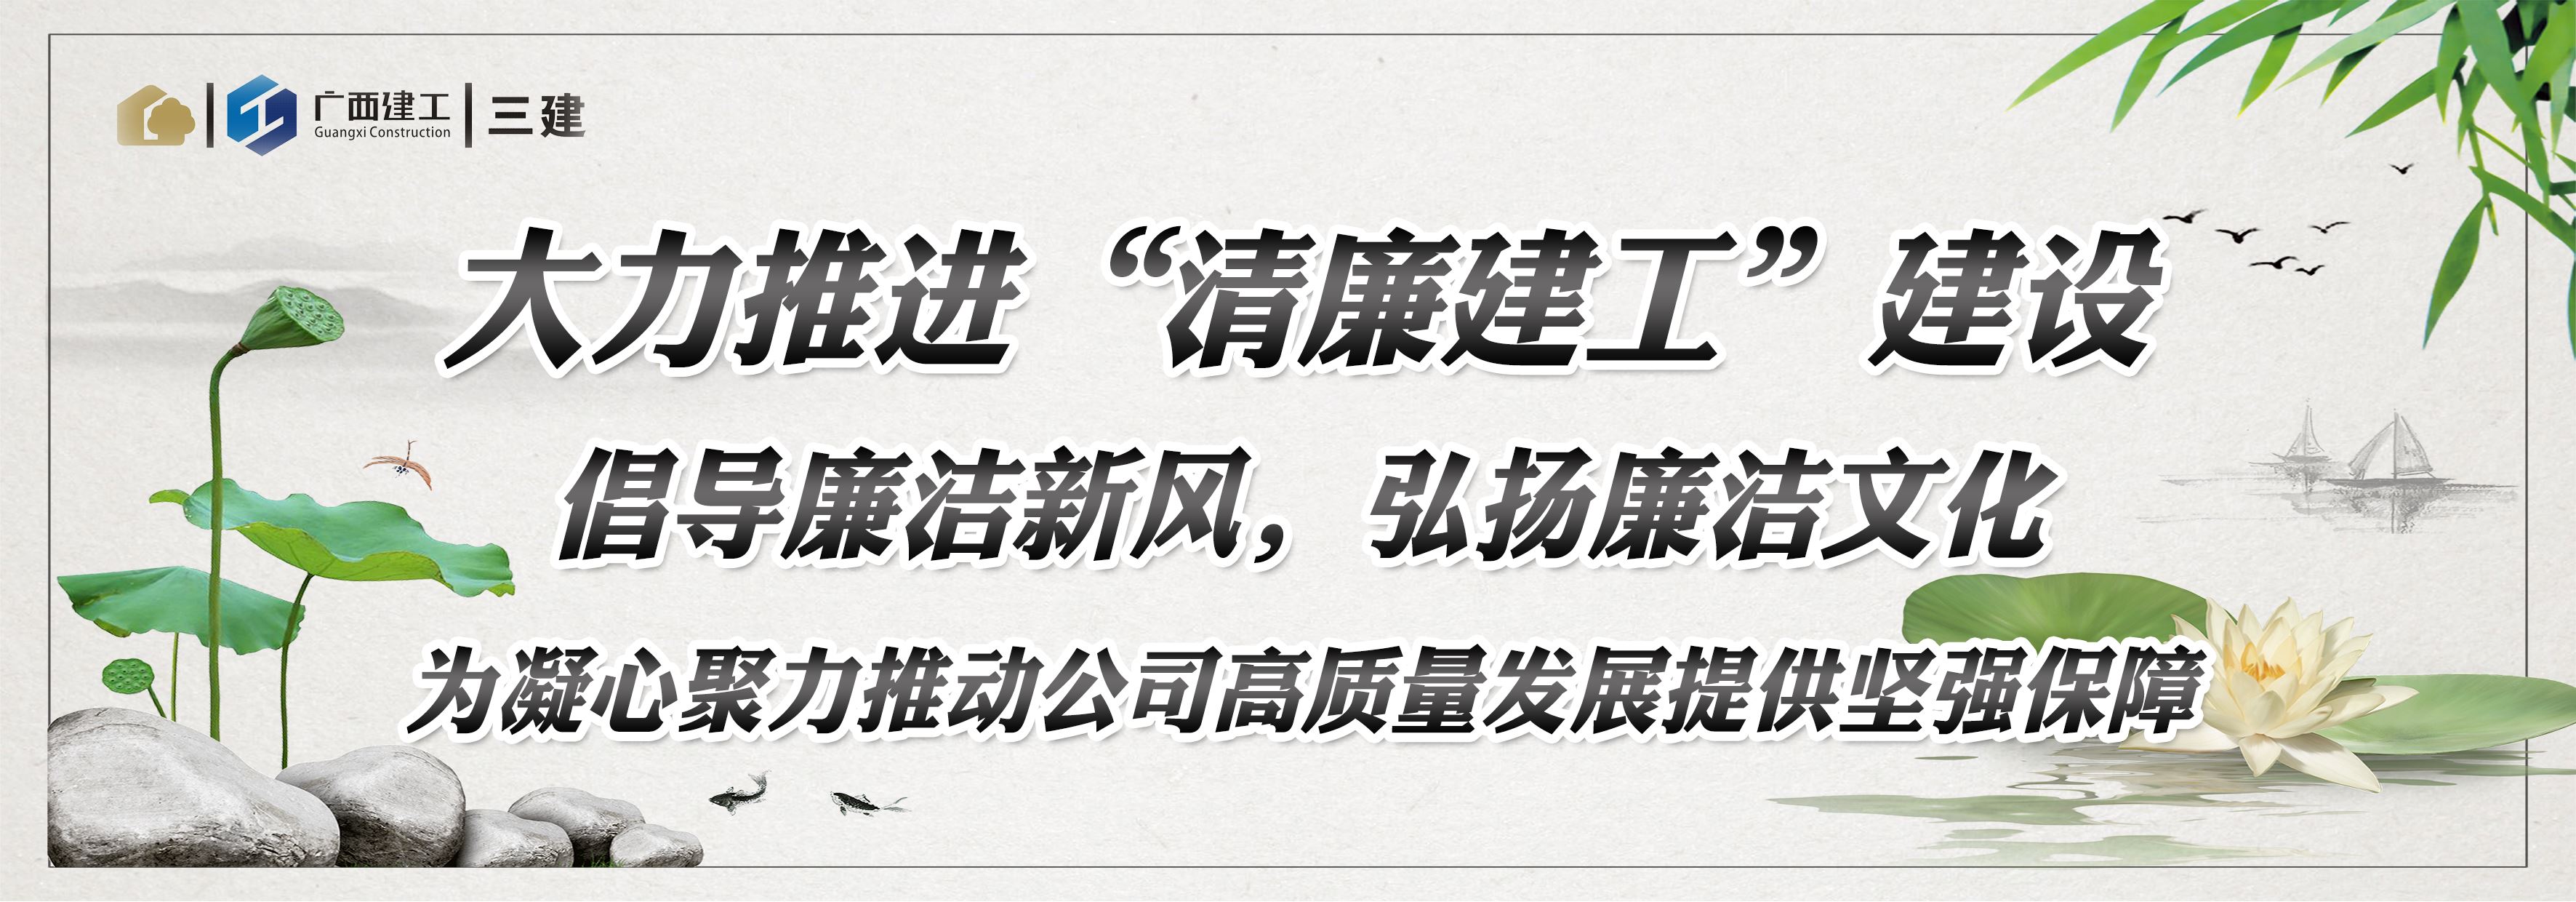 免费pg电子试玩(中国)集团官方网广告图2